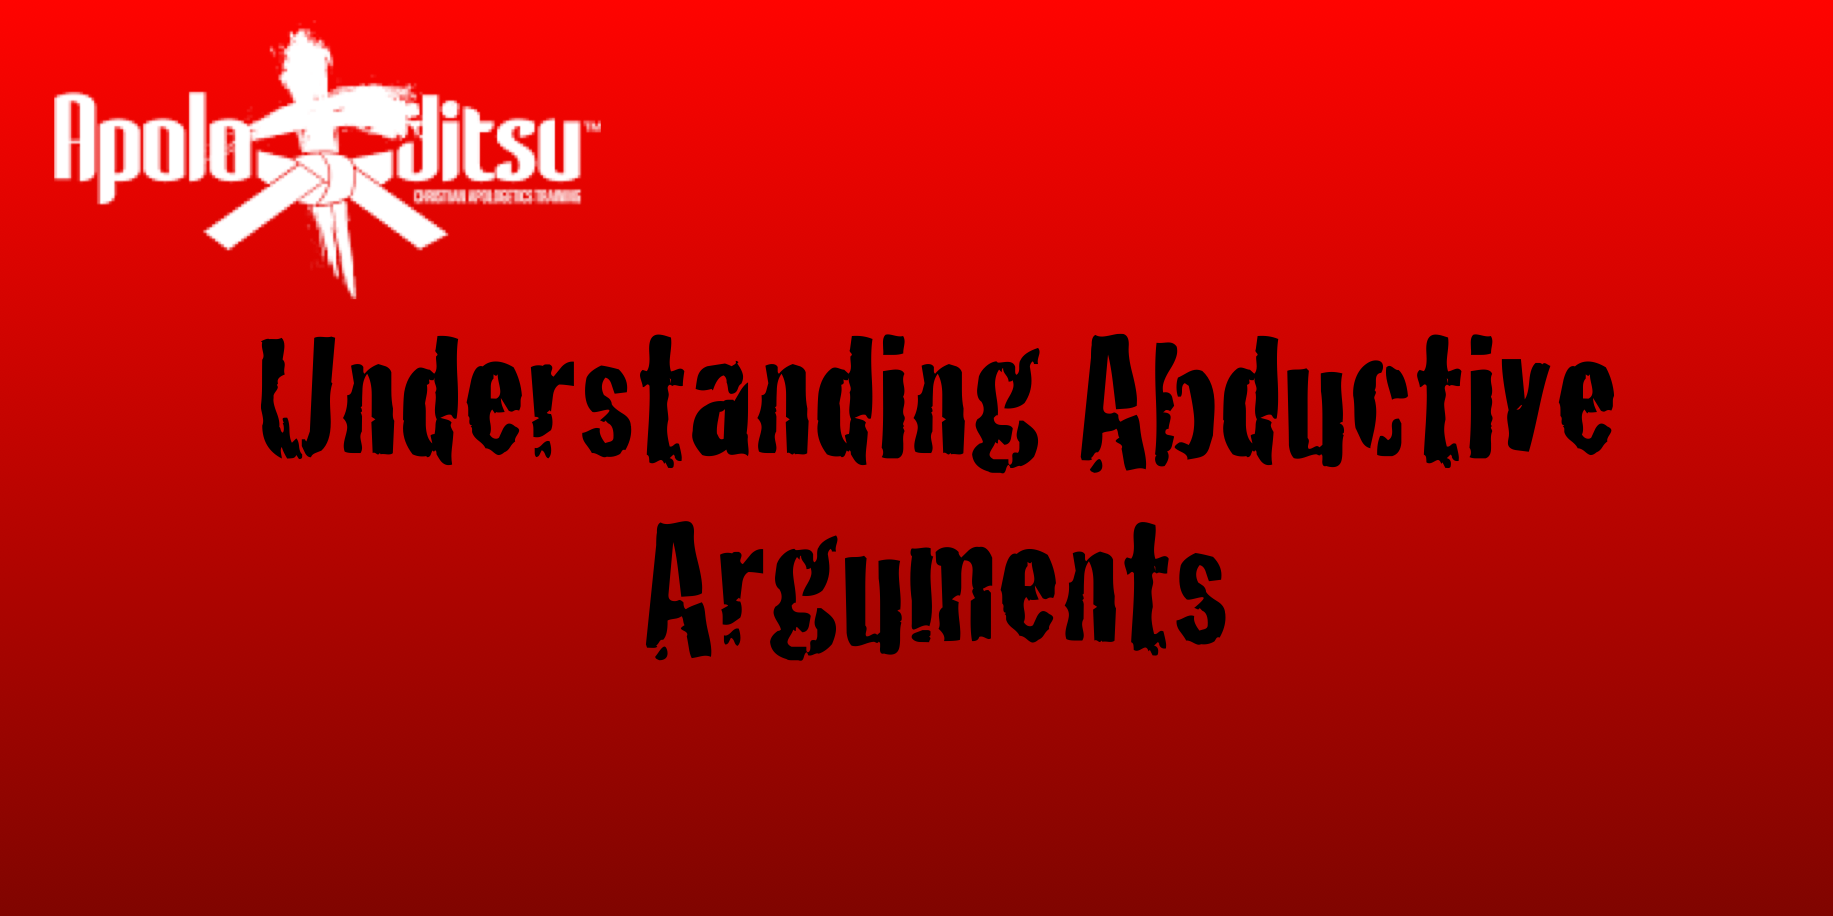 Abductive Arguments